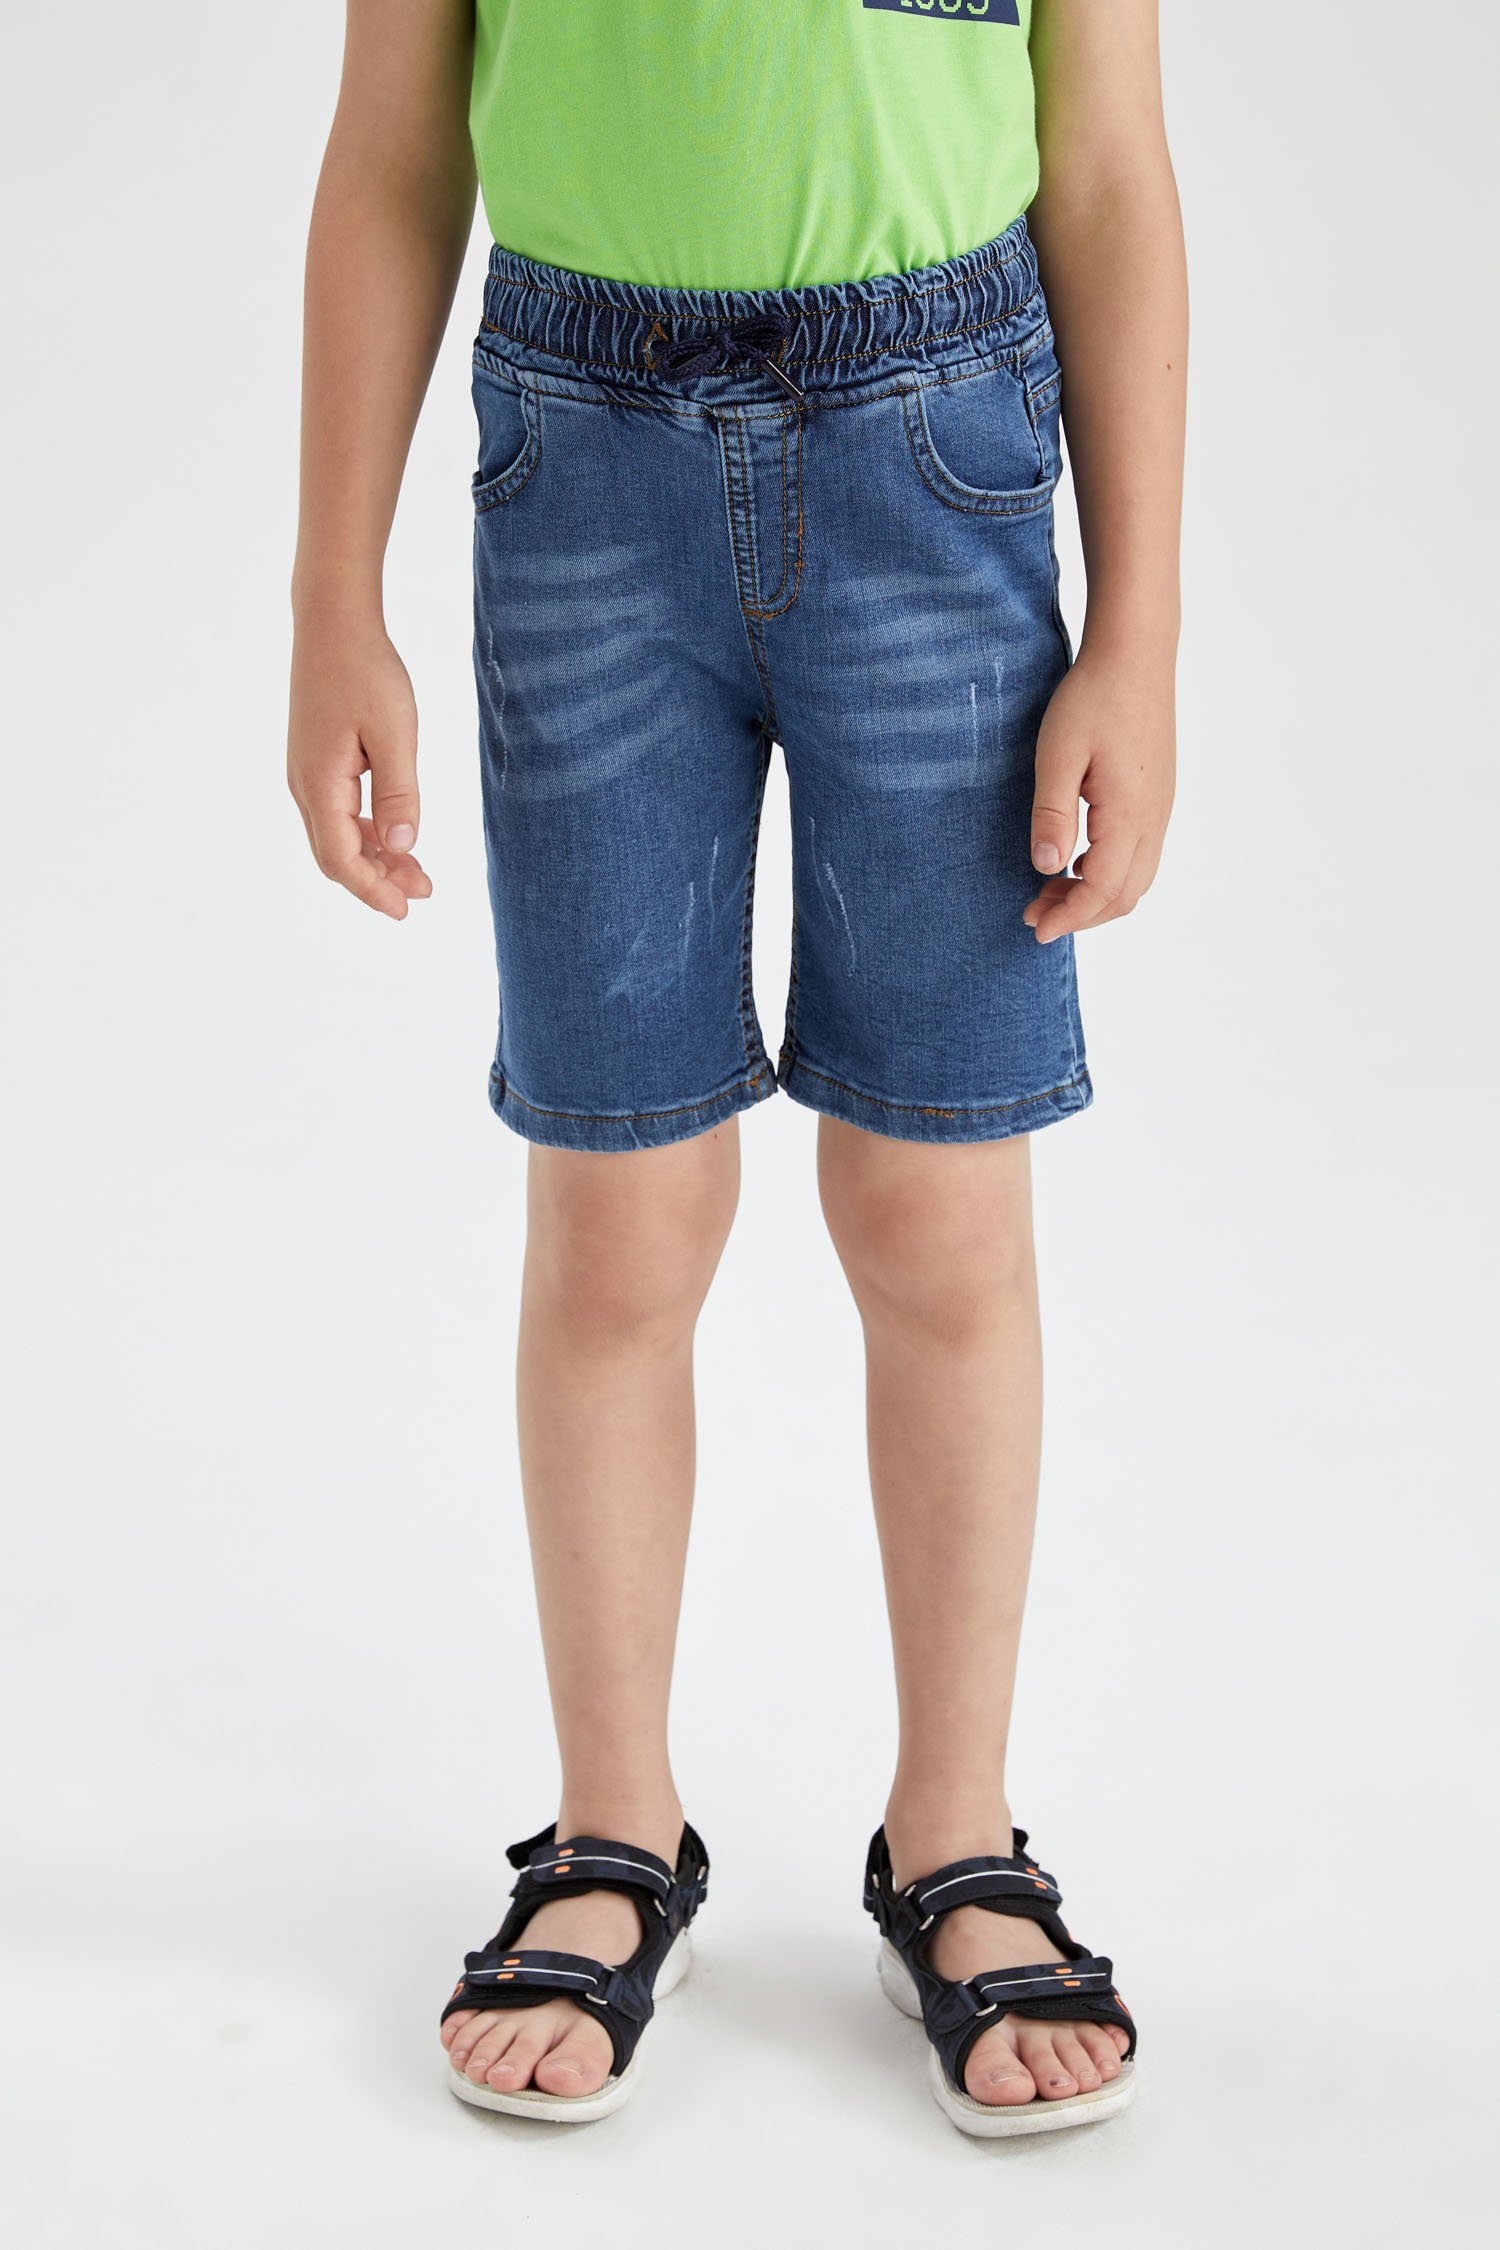 Jeans Kindershorts online kaufen OTTO 